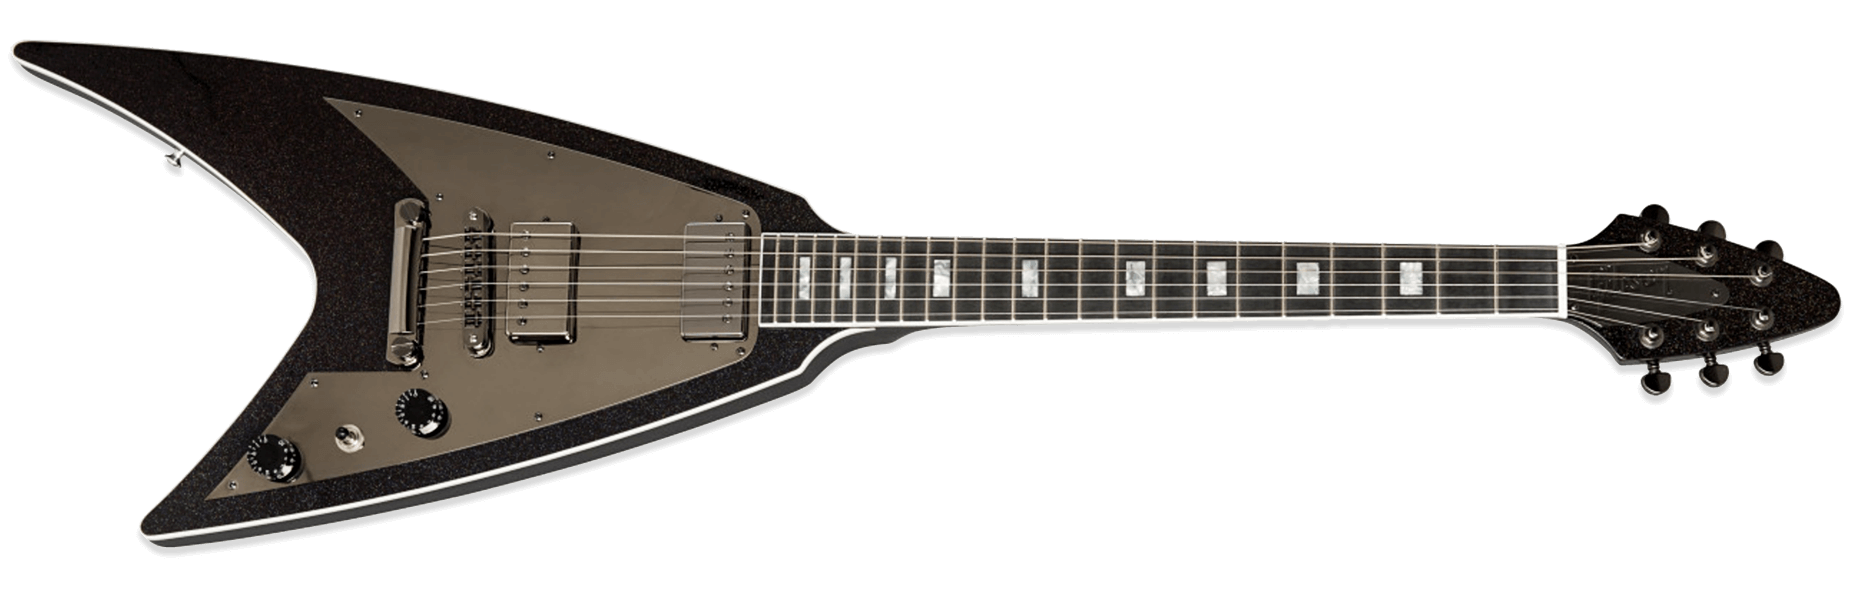 Gibson Modern Flying V Ebony Prism